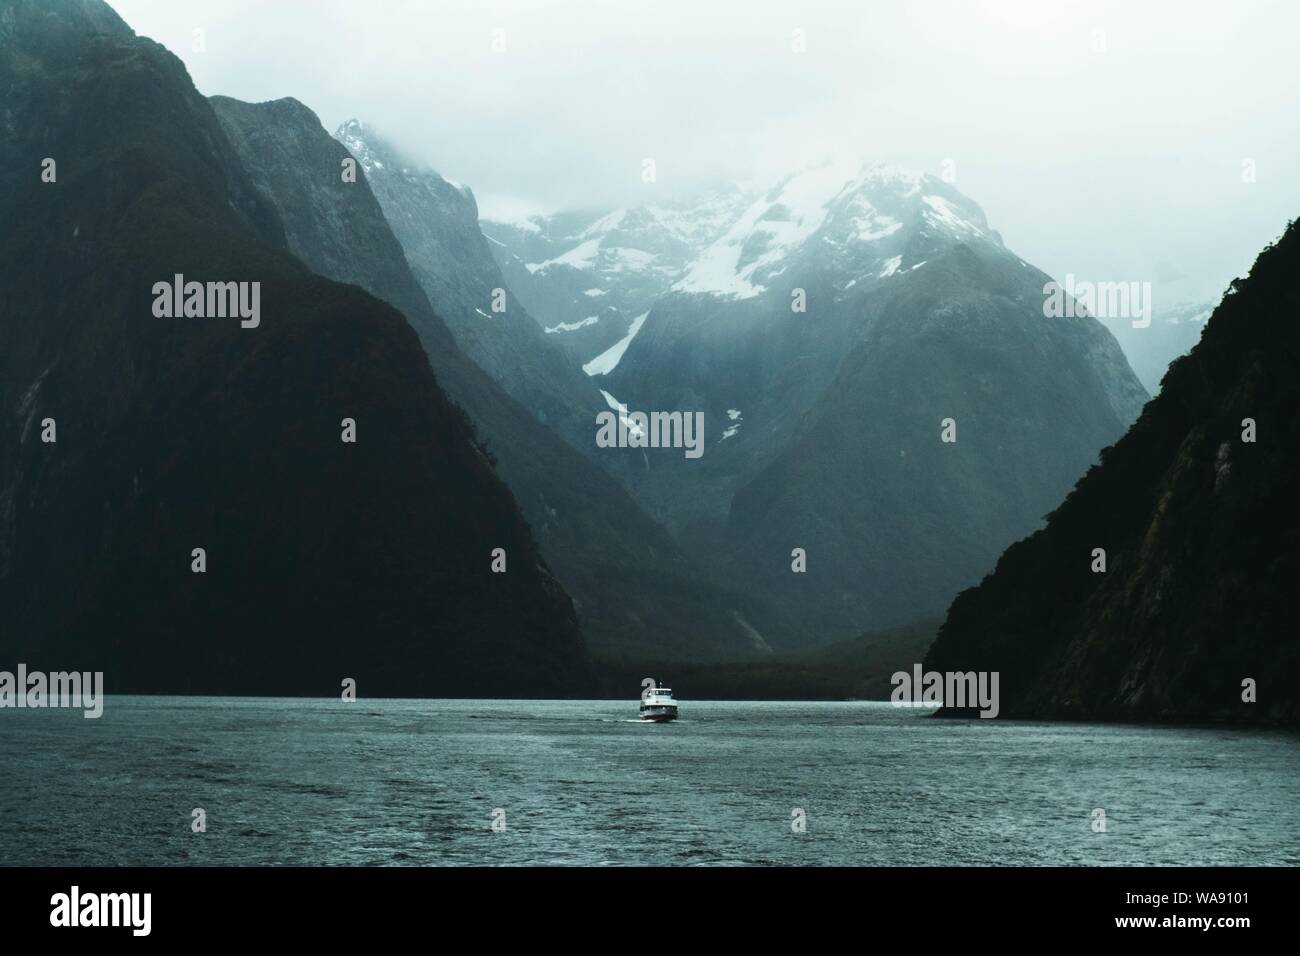 Belle photo d'un lac avec un bateau de croisière de cuddy dans le milieu et les montagnes rocheuses des deux côtés Banque D'Images